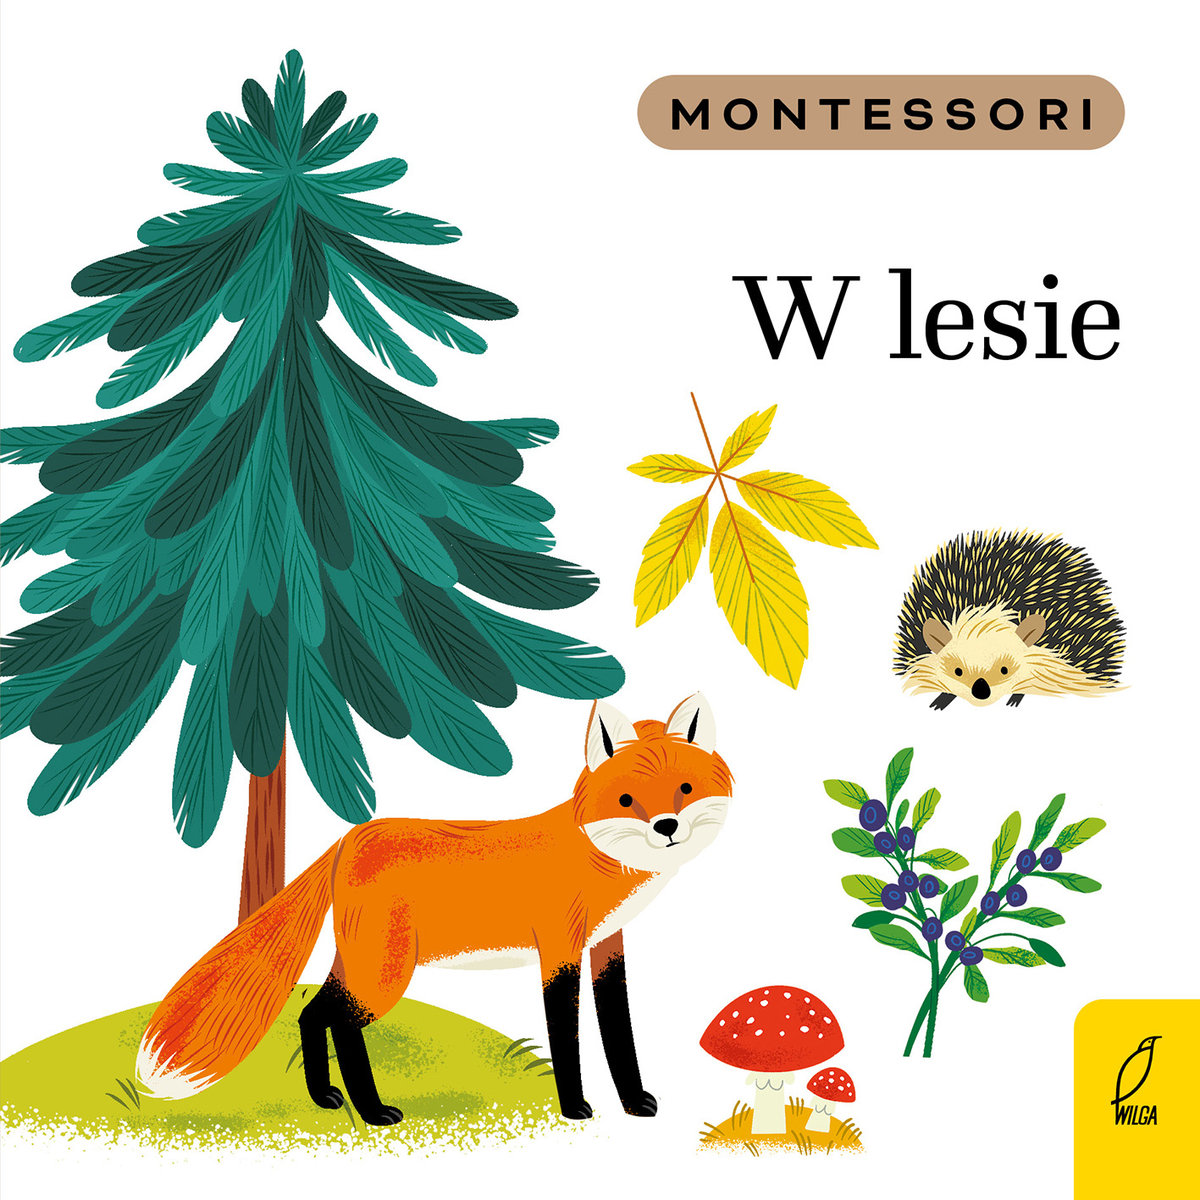 Montessori W lesie by . 